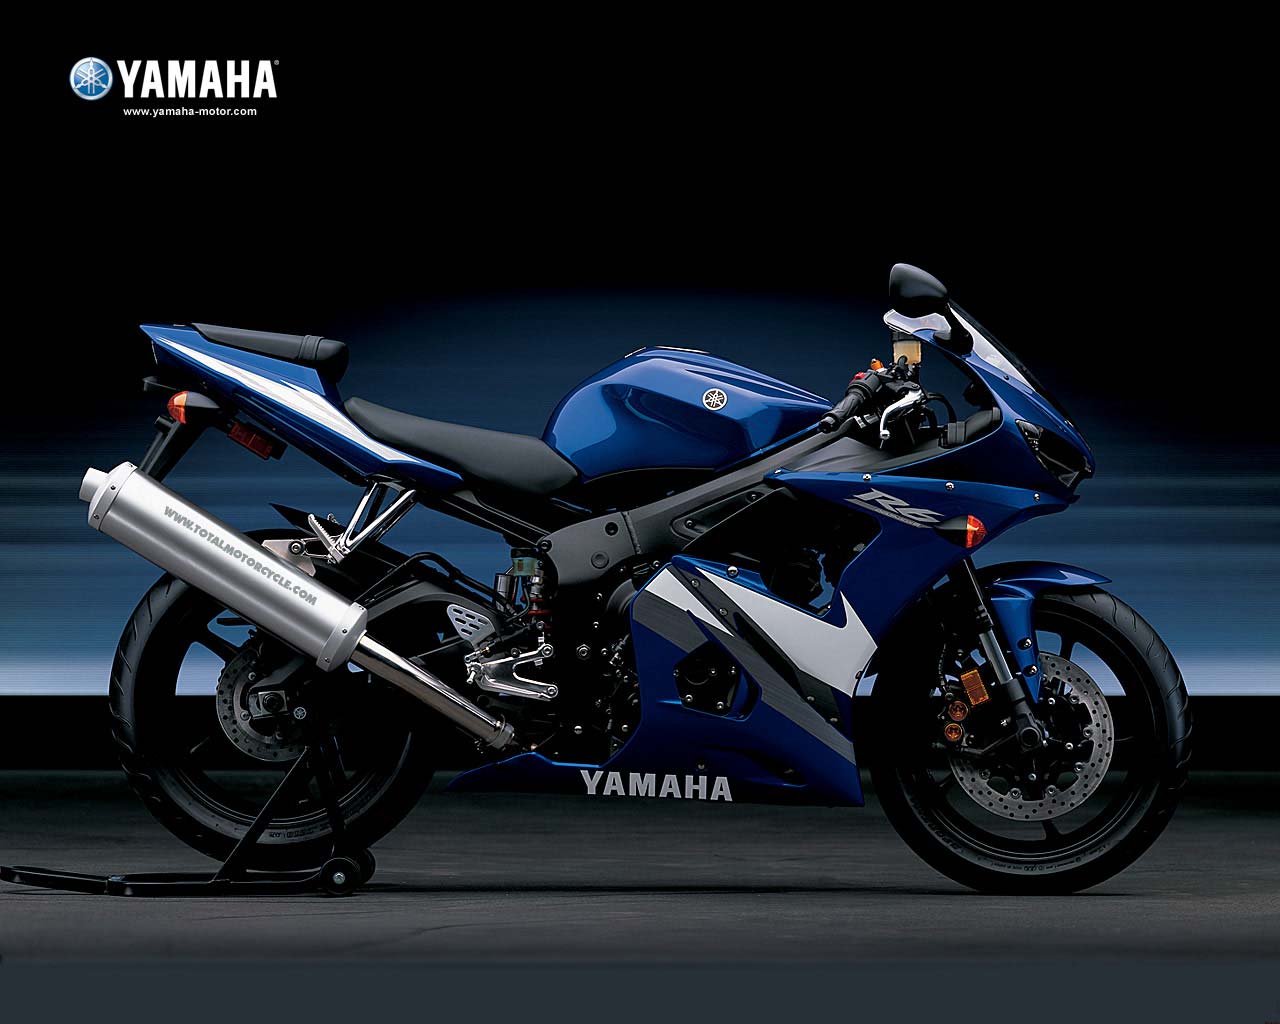 Mungkin Motor Inilah Yang Menjadi Basis Desain Dari Yamaha R25